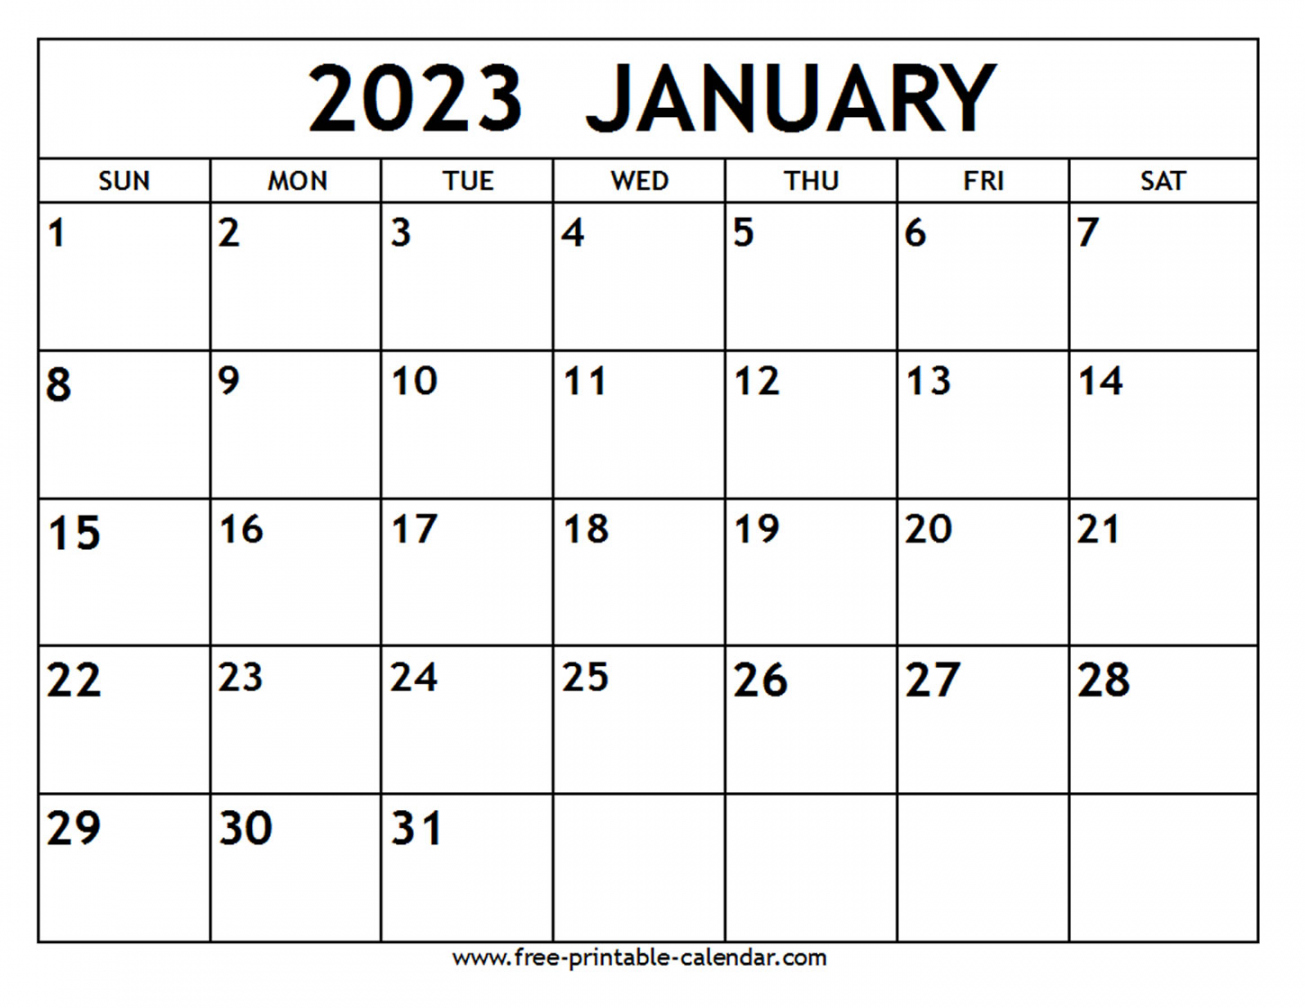 Free Printable Calendar January 2023 - Printable - January  Calendar - Free-printable-calendar